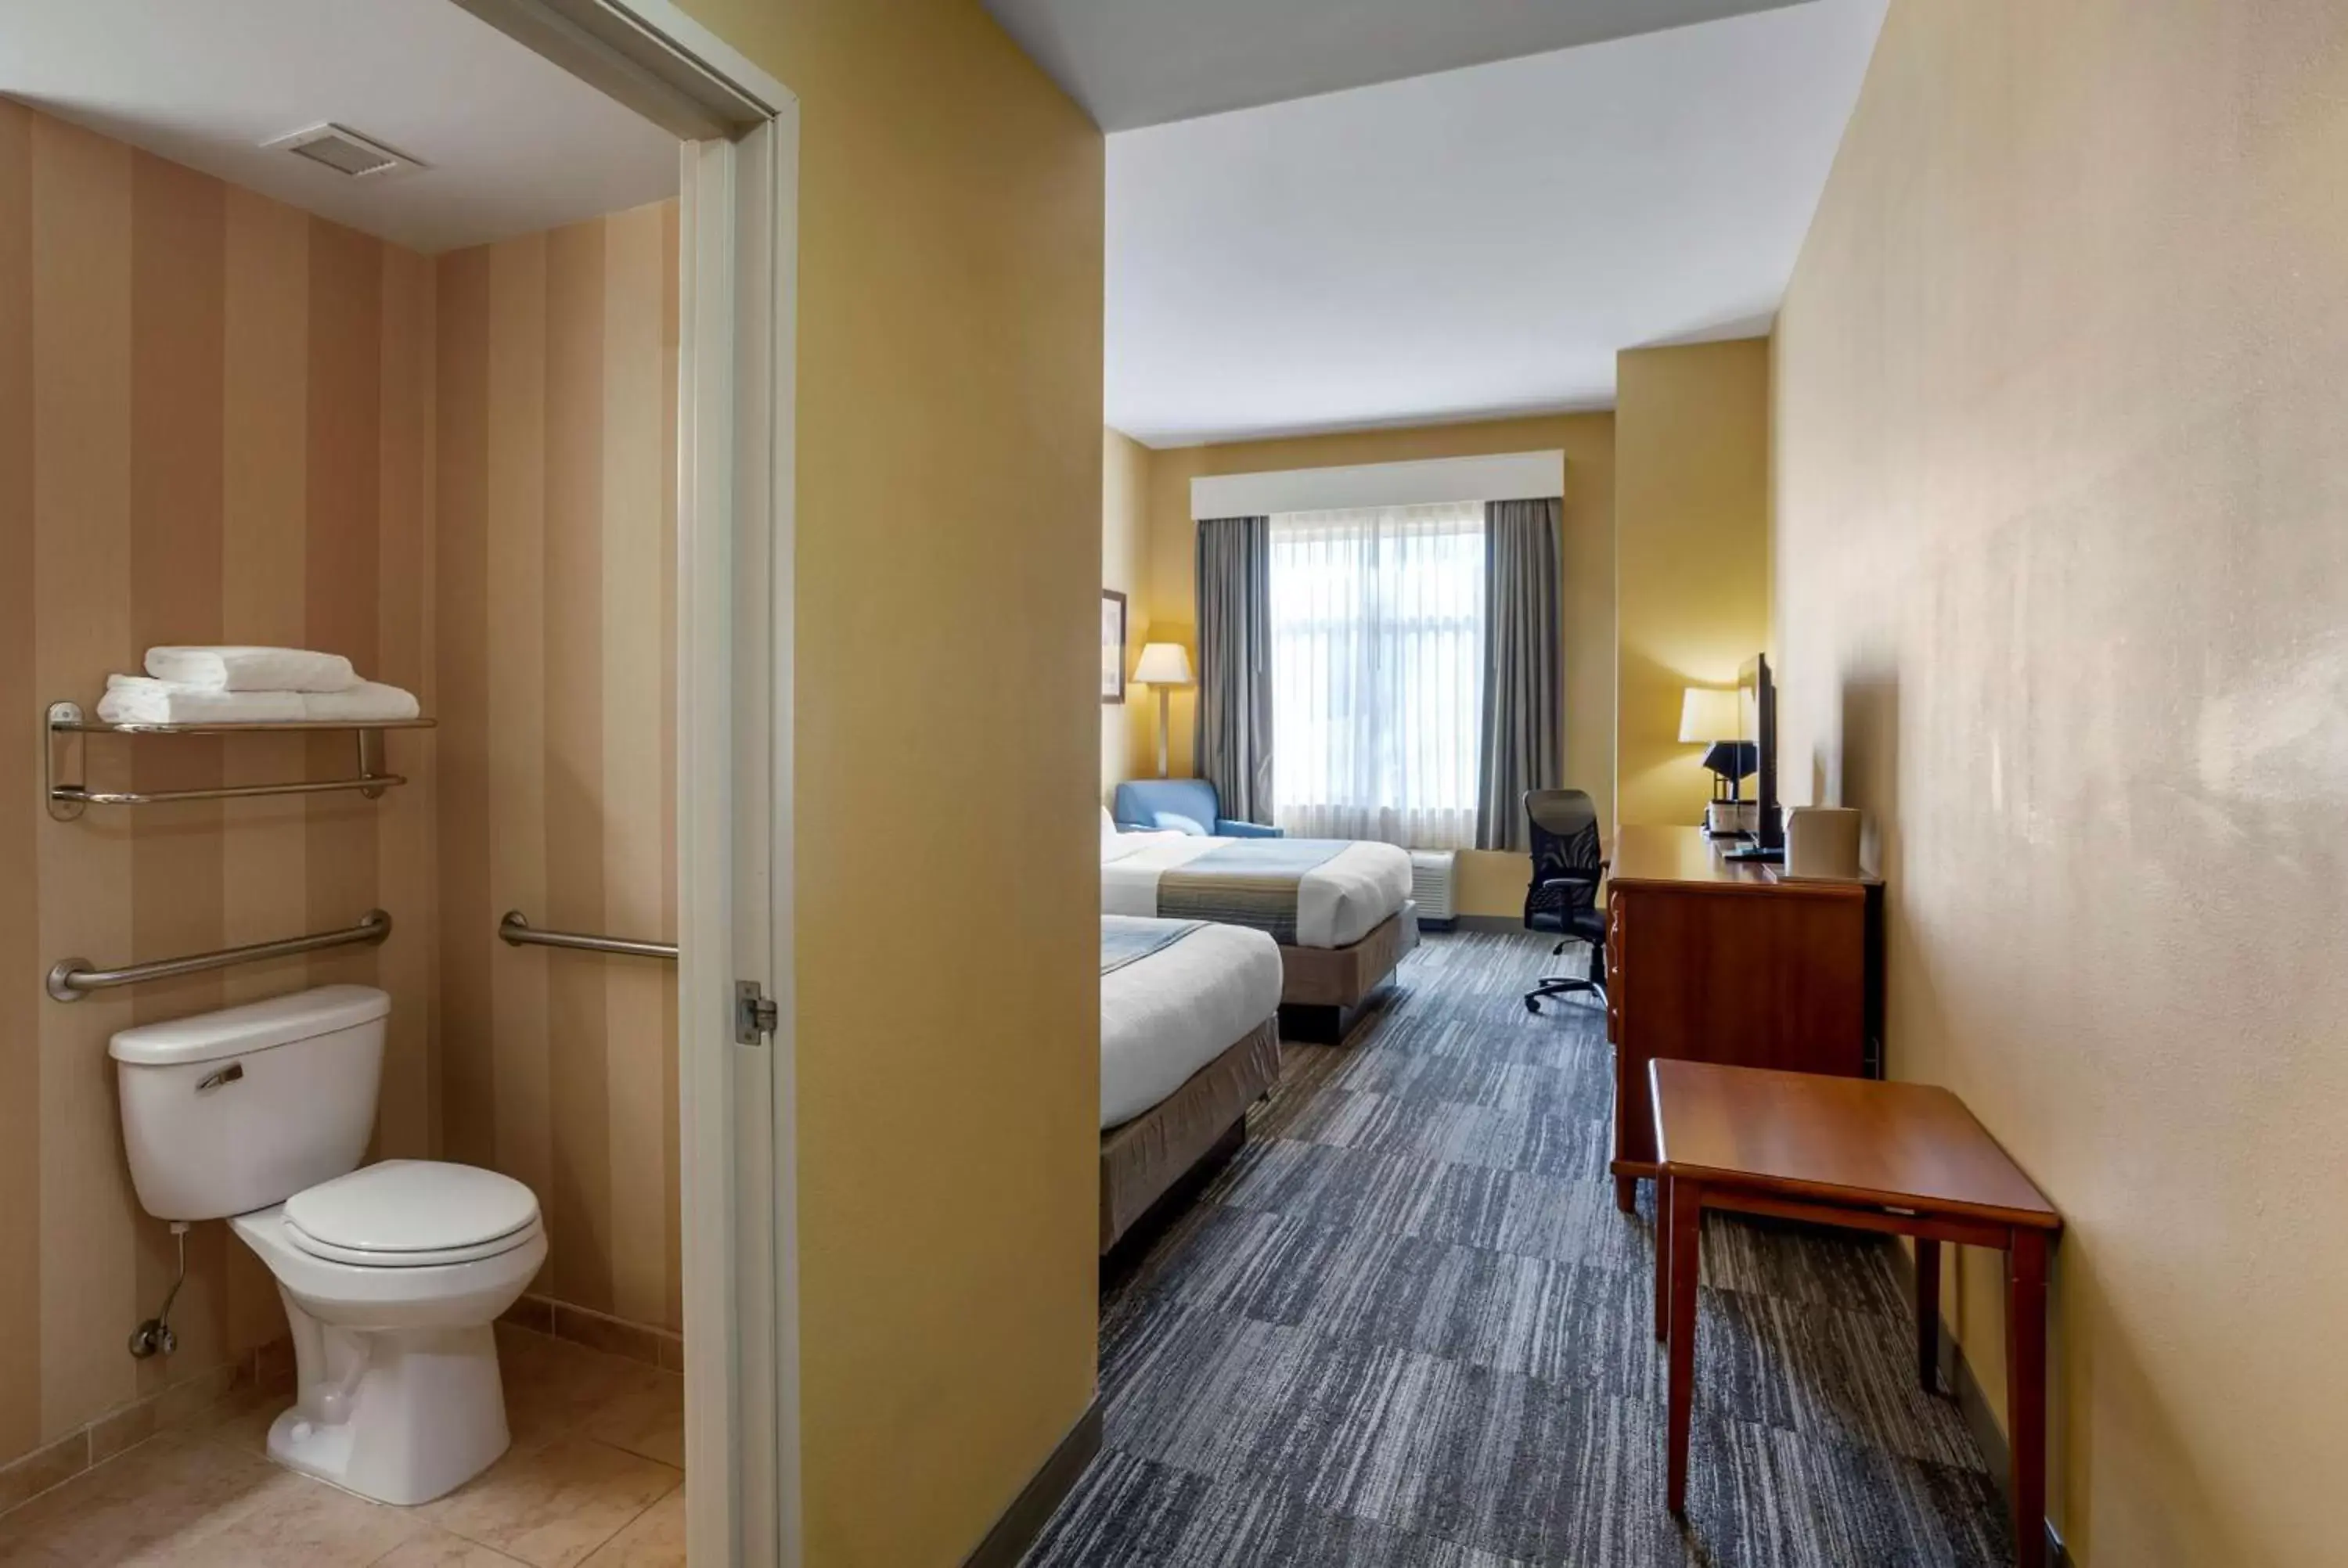 Bedroom, Bathroom in Best Western PLUS University Park Inn & Suites